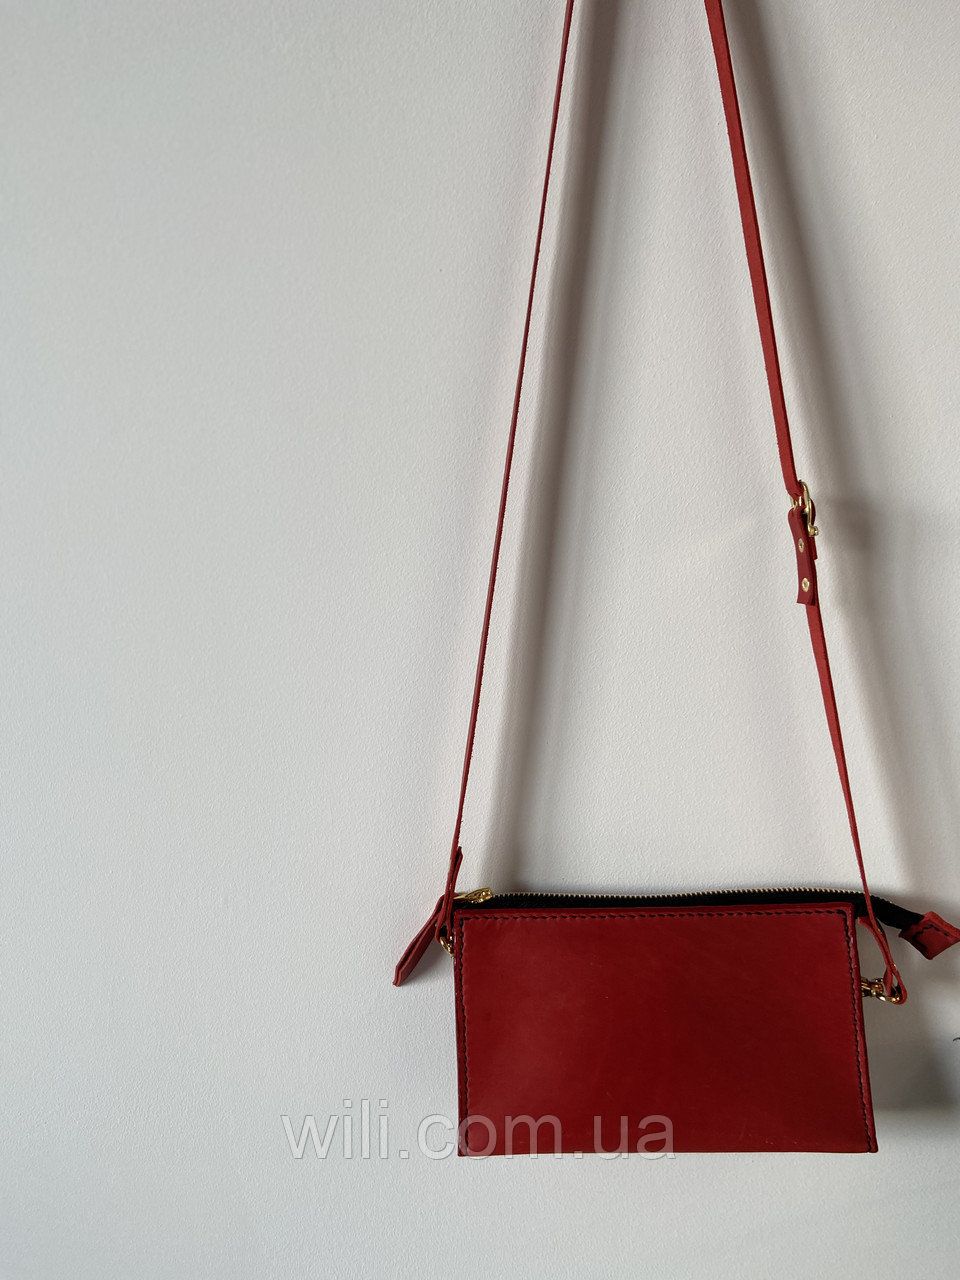 Жіноча сумочка ручної роботи "Бриз"